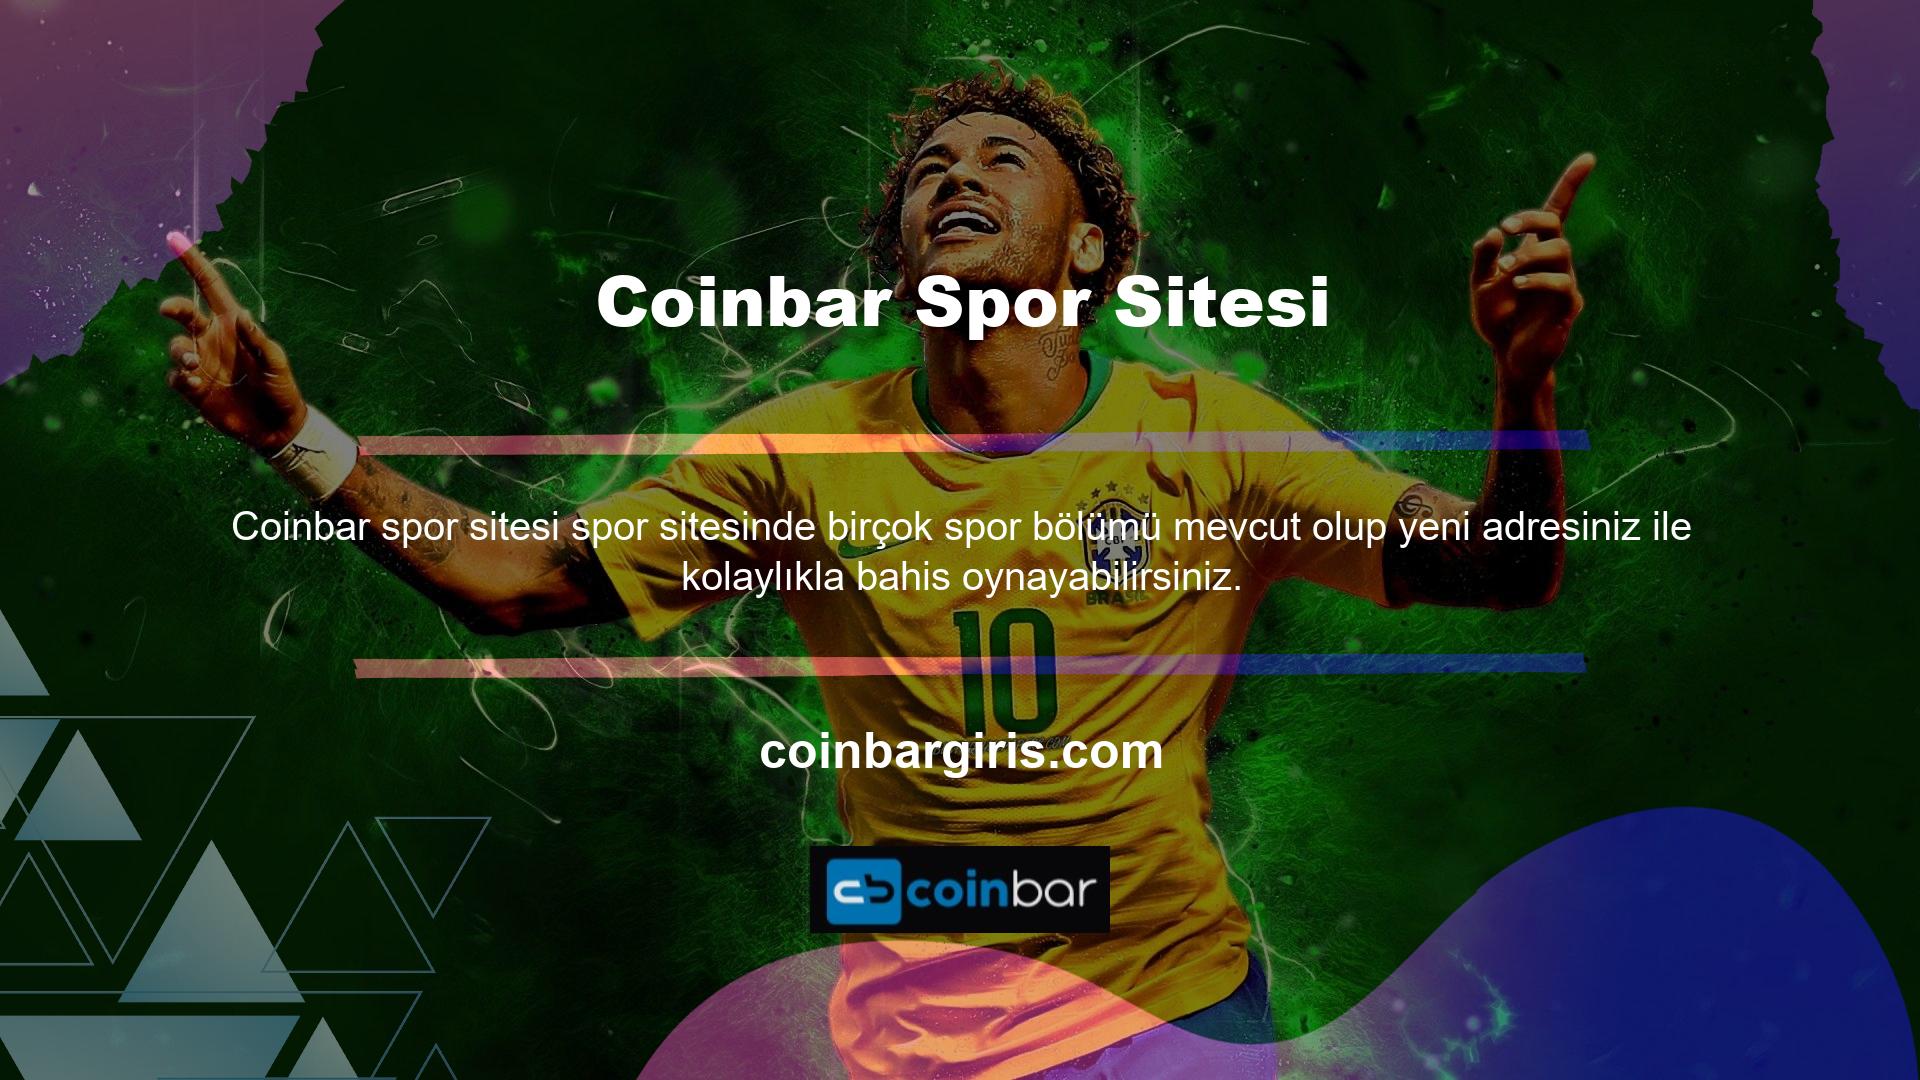 Coinbar online casino bölümü çok çeşitli yeni oyunlar sunmaktadır